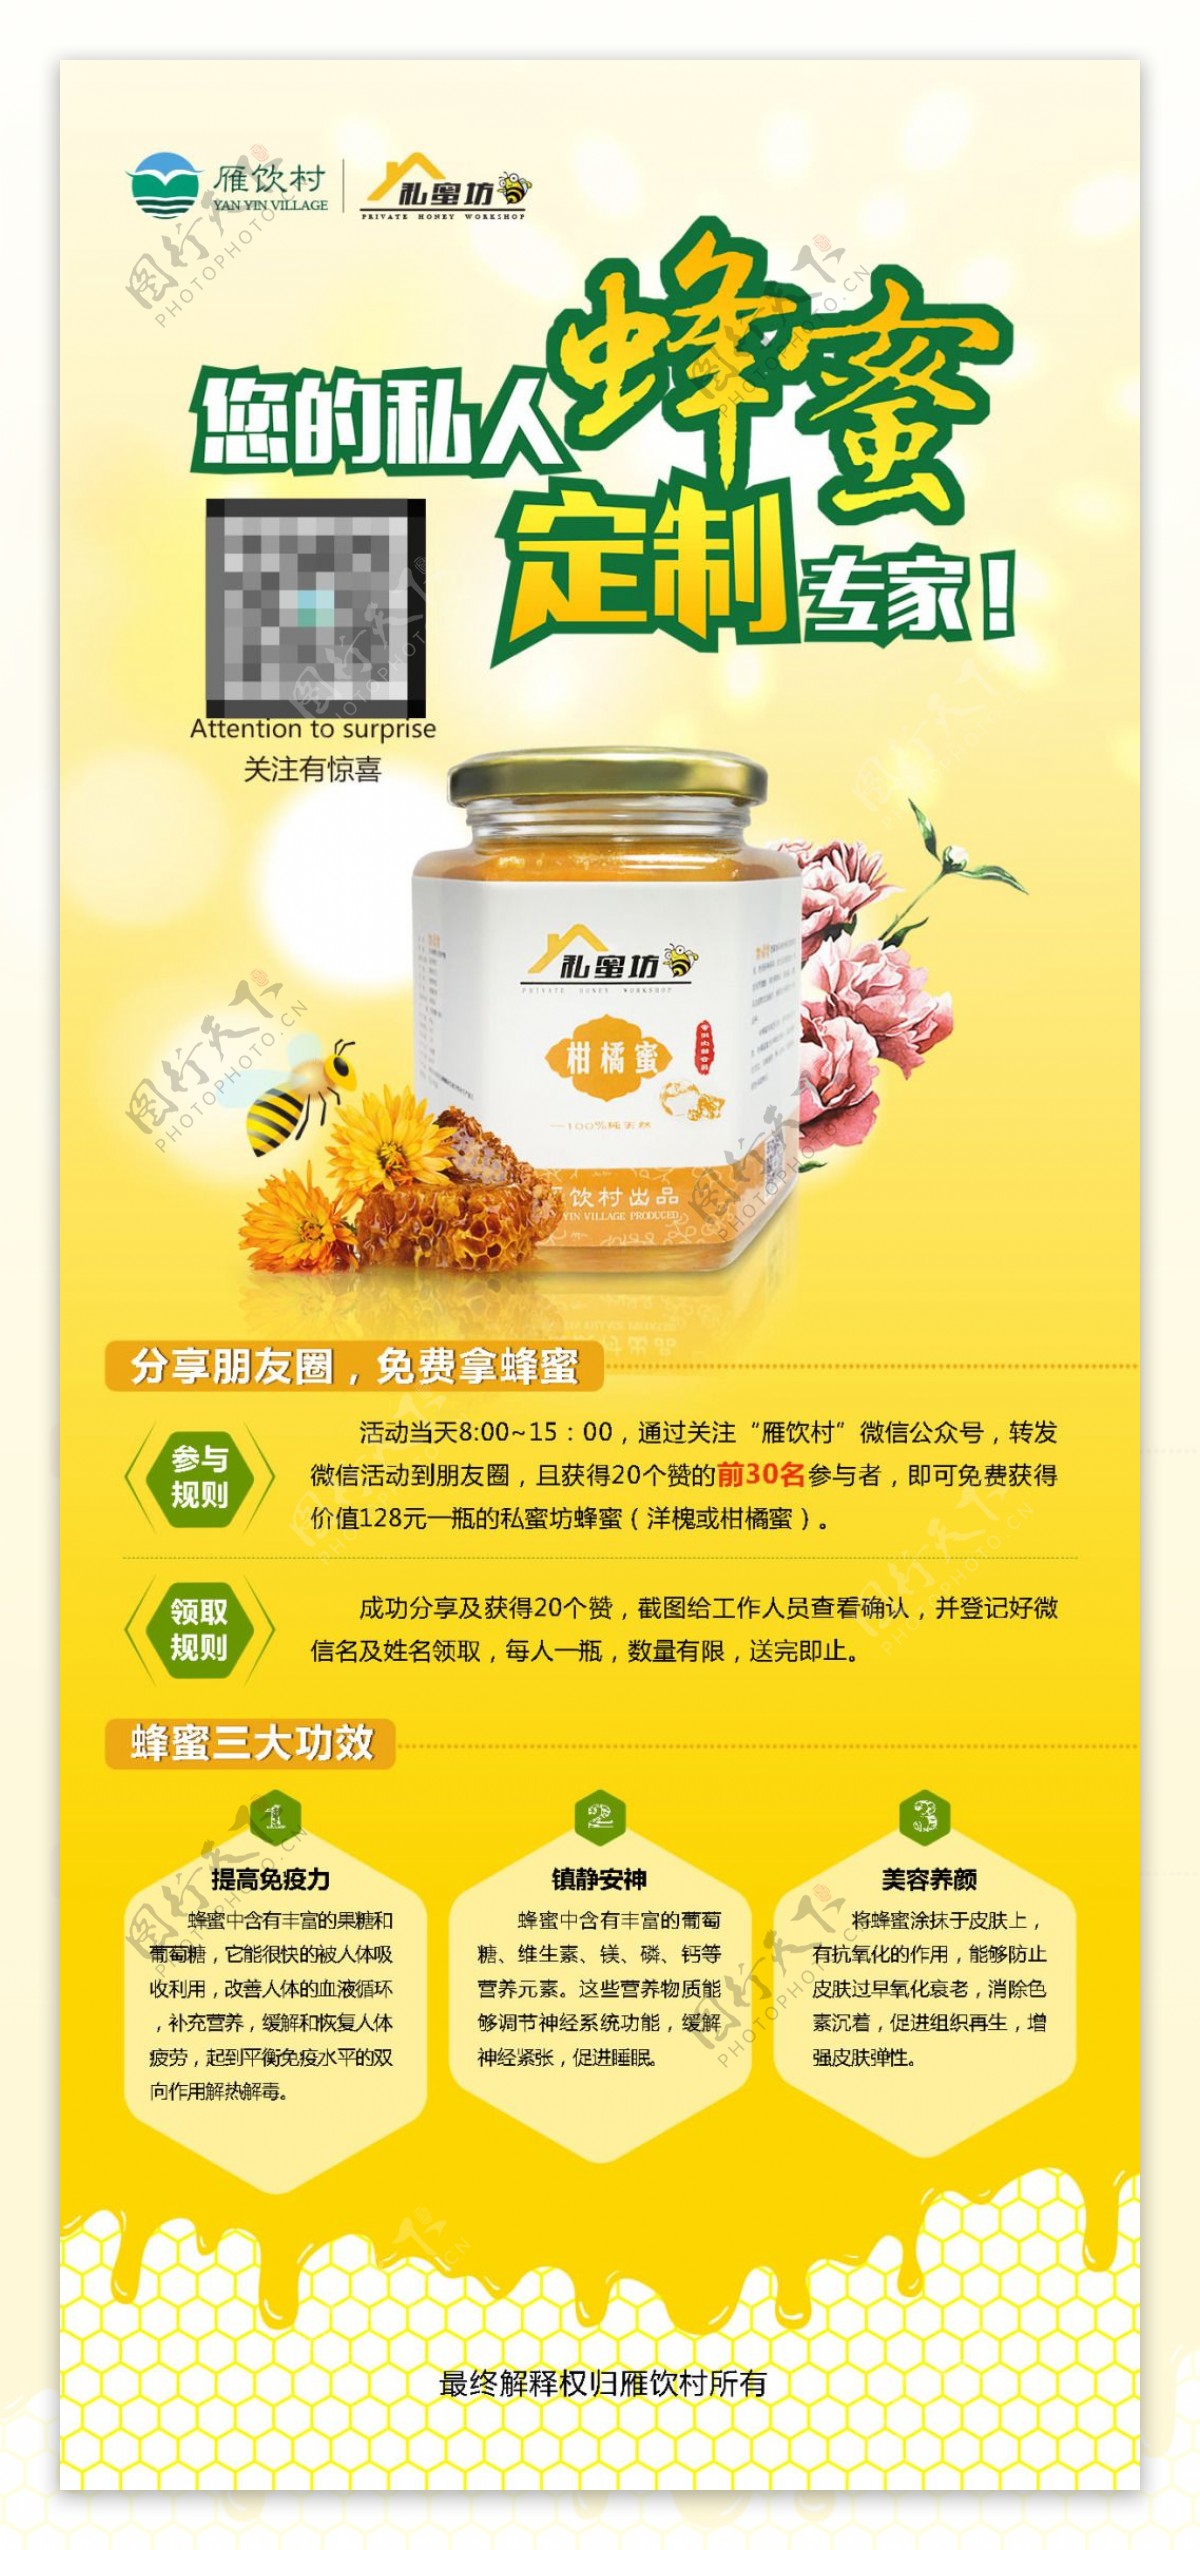 私人订制柑橘蜂蜜产品宣传活动展架